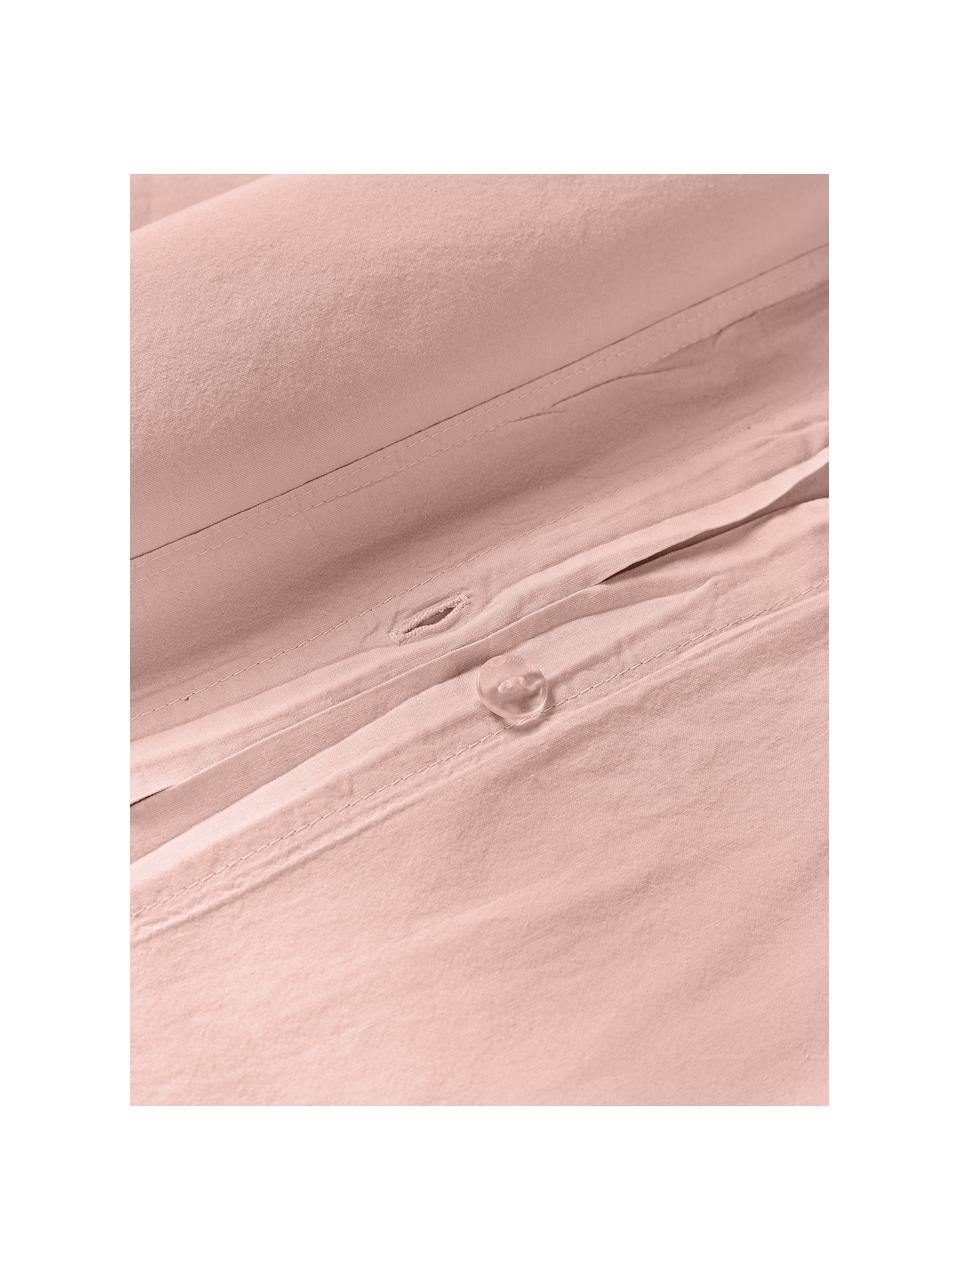 Poszwa na kołdrę z bawełny Darlyn, Brudny różowy, S 200 x D 200 cm